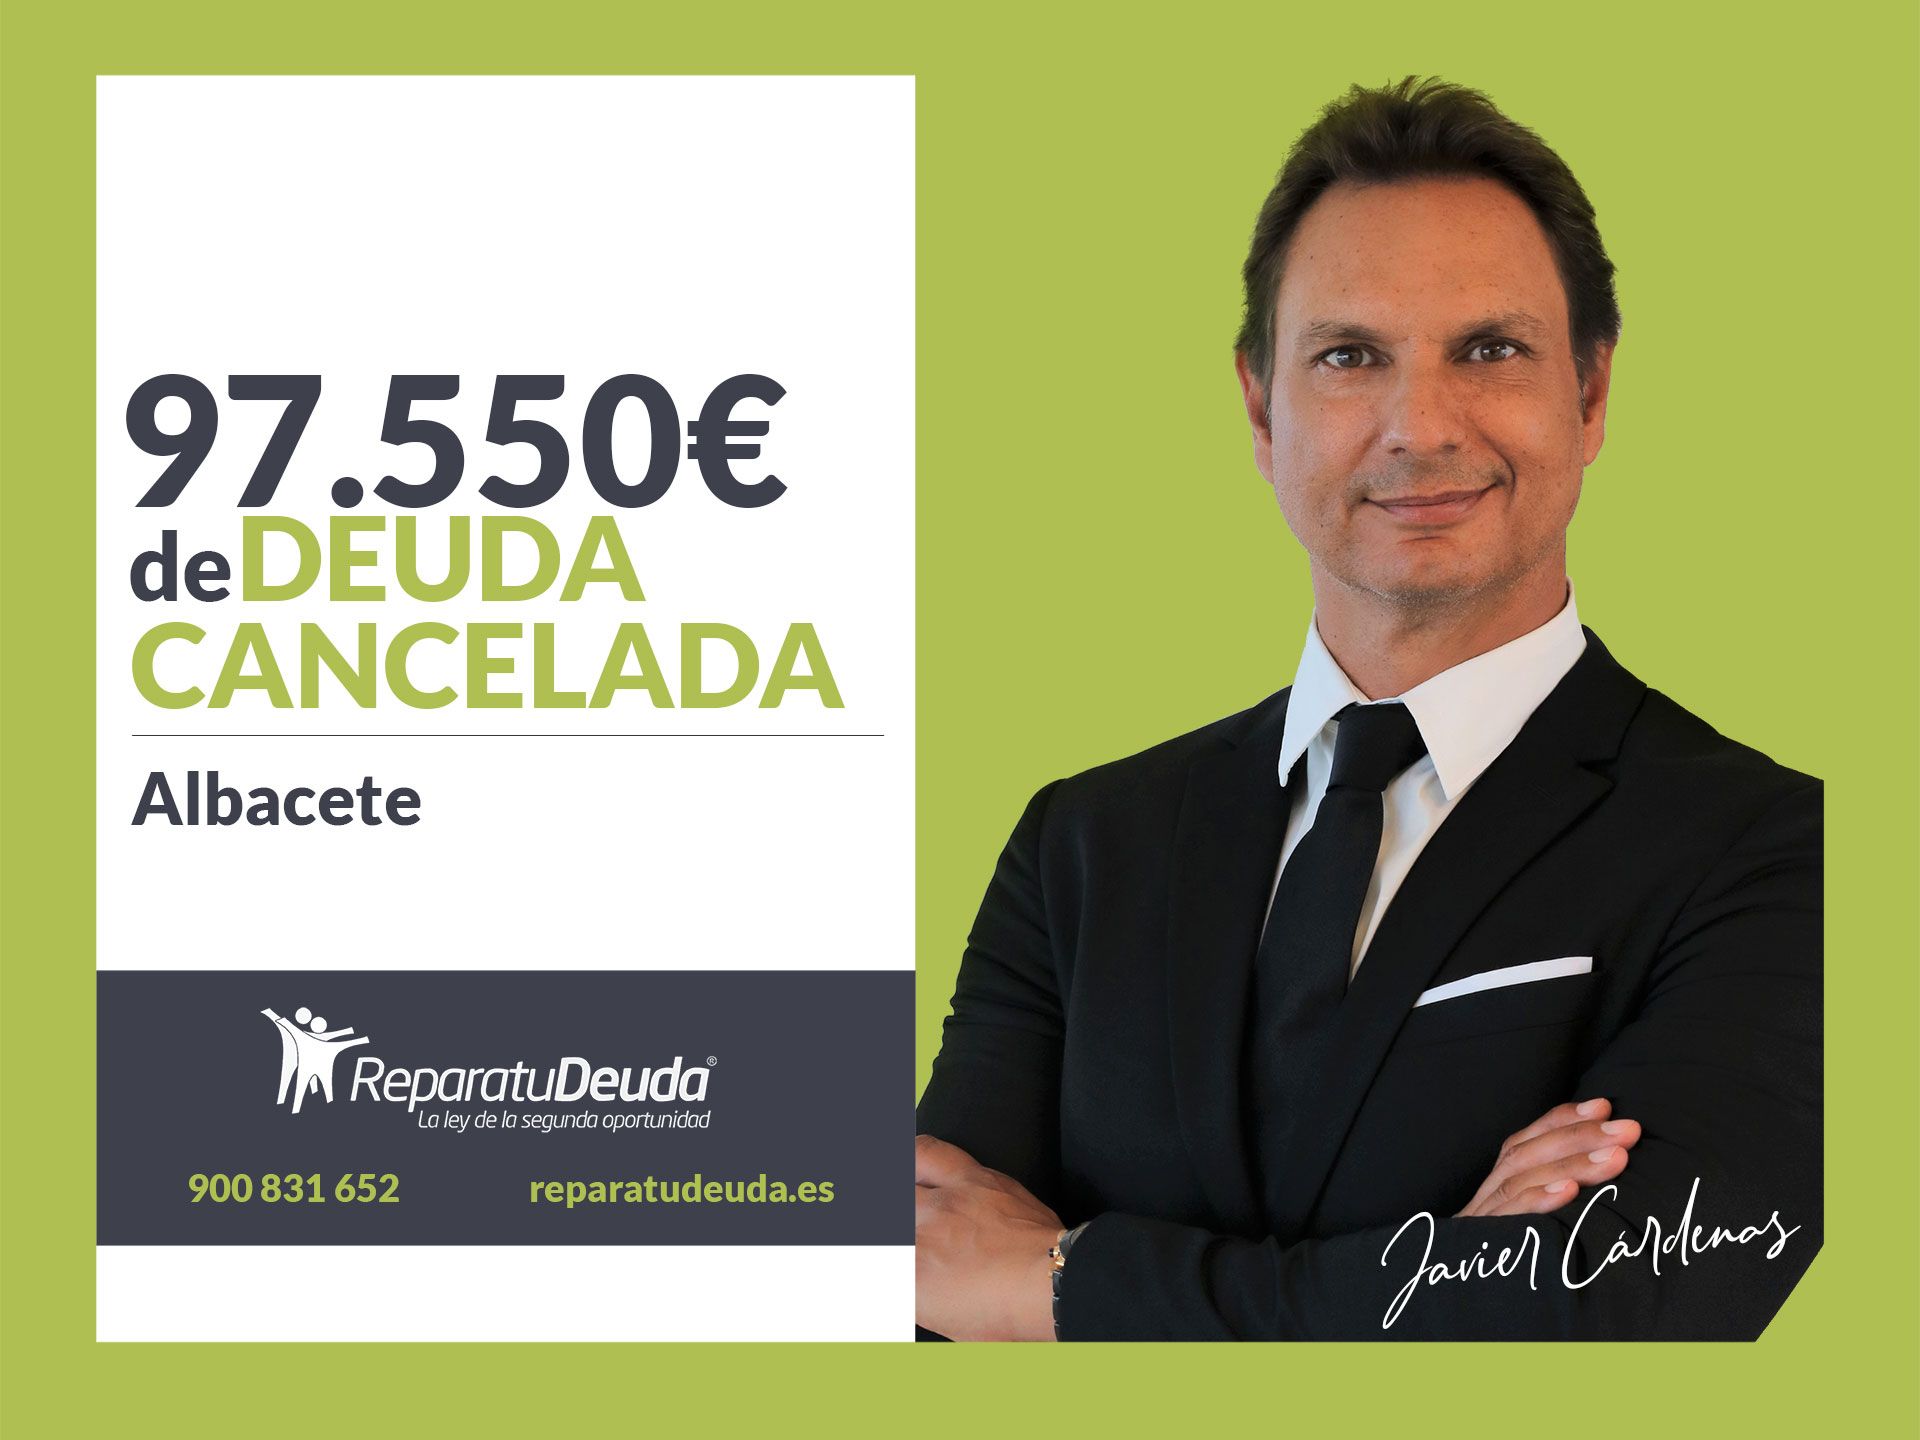 Repara tu Deuda cancela 97.550? en Albacete (Castilla-La Mancha) con la Ley de Segunda Oportunidad